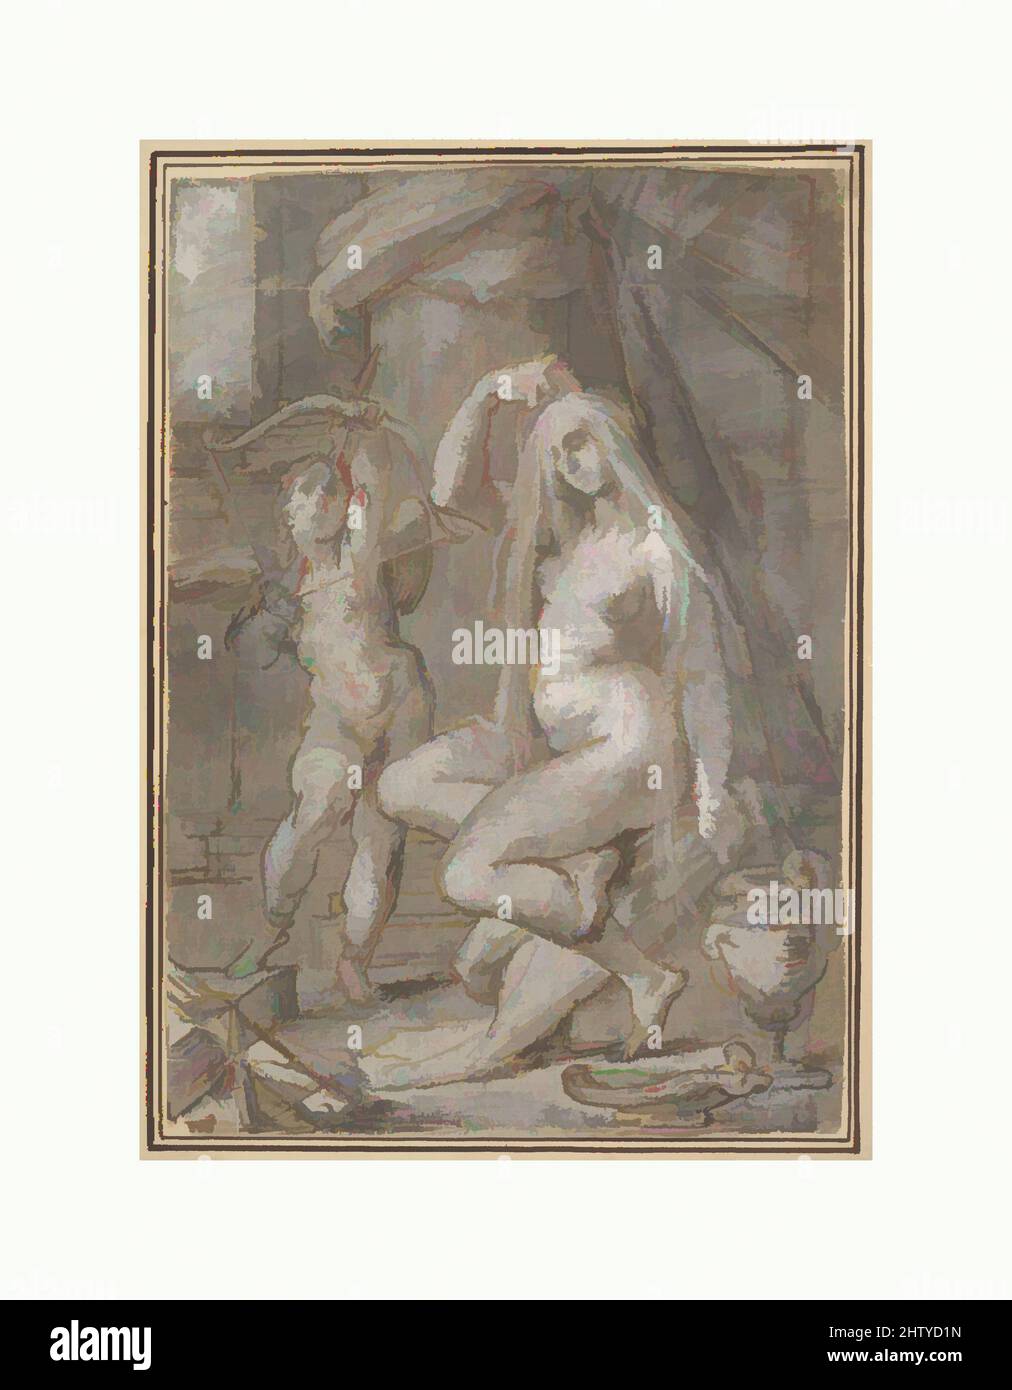 Arte ispirata da Venere e Amor, ca. 1585, inchiostro Pen e marrone, colore marrone chiaro e scuro e grigio, accentuato con bianco (parzialmente ossidato); tracciato per trasferimento, 7 5/8 x 5 5/16 pollici (19,4 x 13,5 cm), disegni, Bartolomeo Spranger (Netherlandish, Anversa 1546–1611 Praga, opere classiche modernizzate da Artotop con un tocco di modernità. Forme, colore e valore, impatto visivo accattivante sulle emozioni artistiche attraverso la libertà delle opere d'arte in modo contemporaneo. Un messaggio senza tempo che persegue una nuova direzione selvaggiamente creativa. Artisti che si rivolgono al supporto digitale e creano l'NFT Artotop Foto Stock